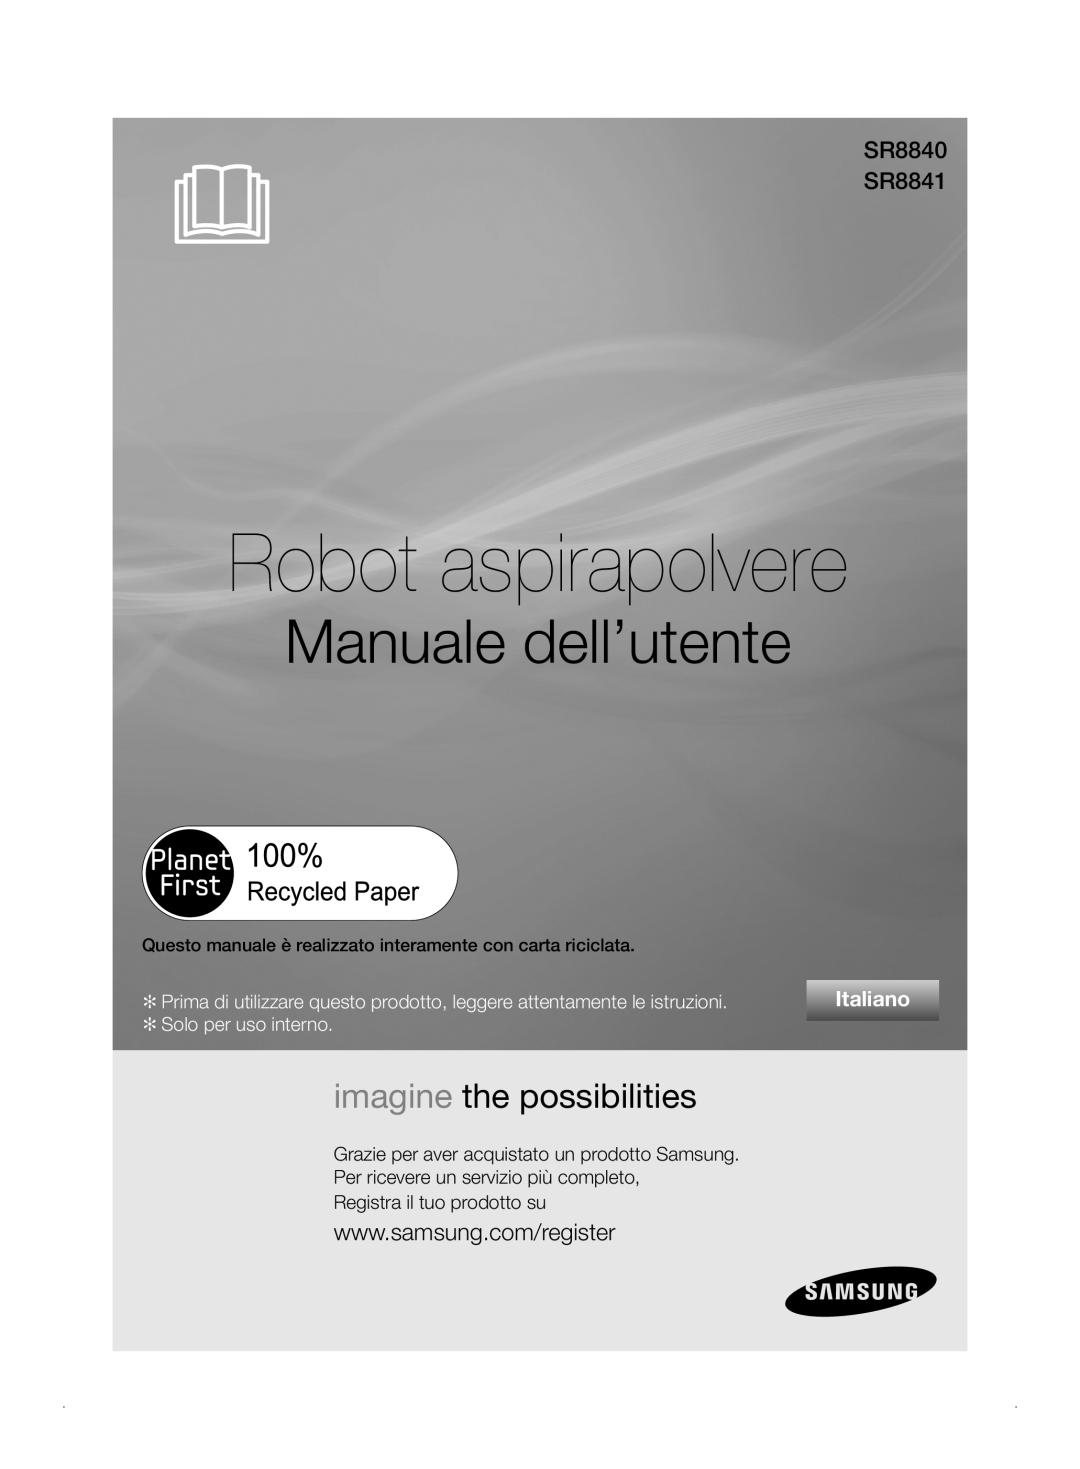 Samsung VCR8841T3B/XEF manual Robot aspirapolvere, Manuale dell’utente, imagine the possibilities, SR8840 SR8841, Italiano 